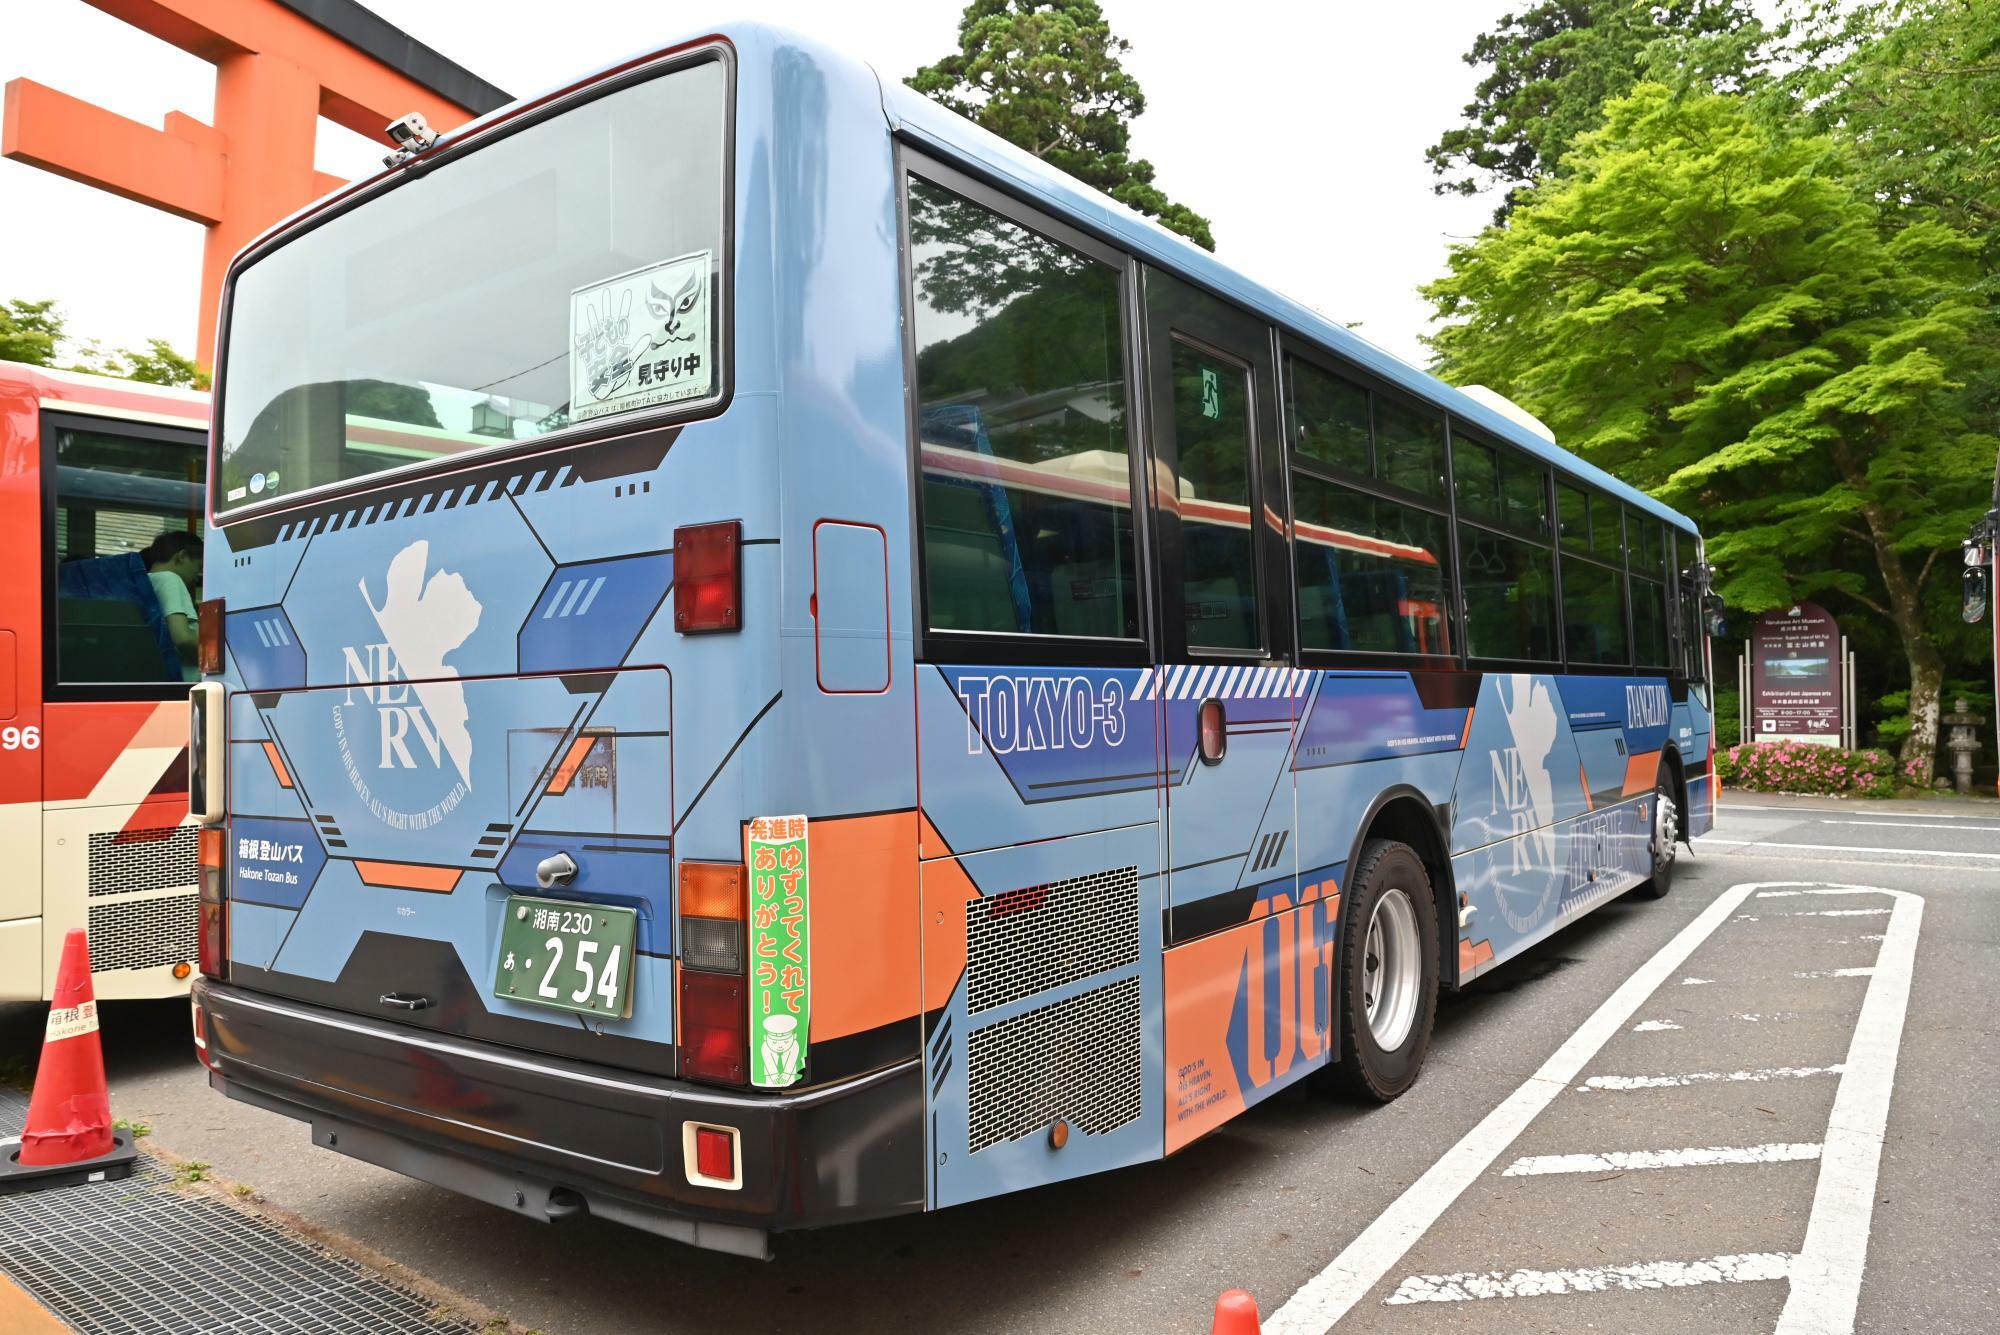 渋滞状況にもよるが、箱根を早く移動したいなら路線バスがおすすめだ